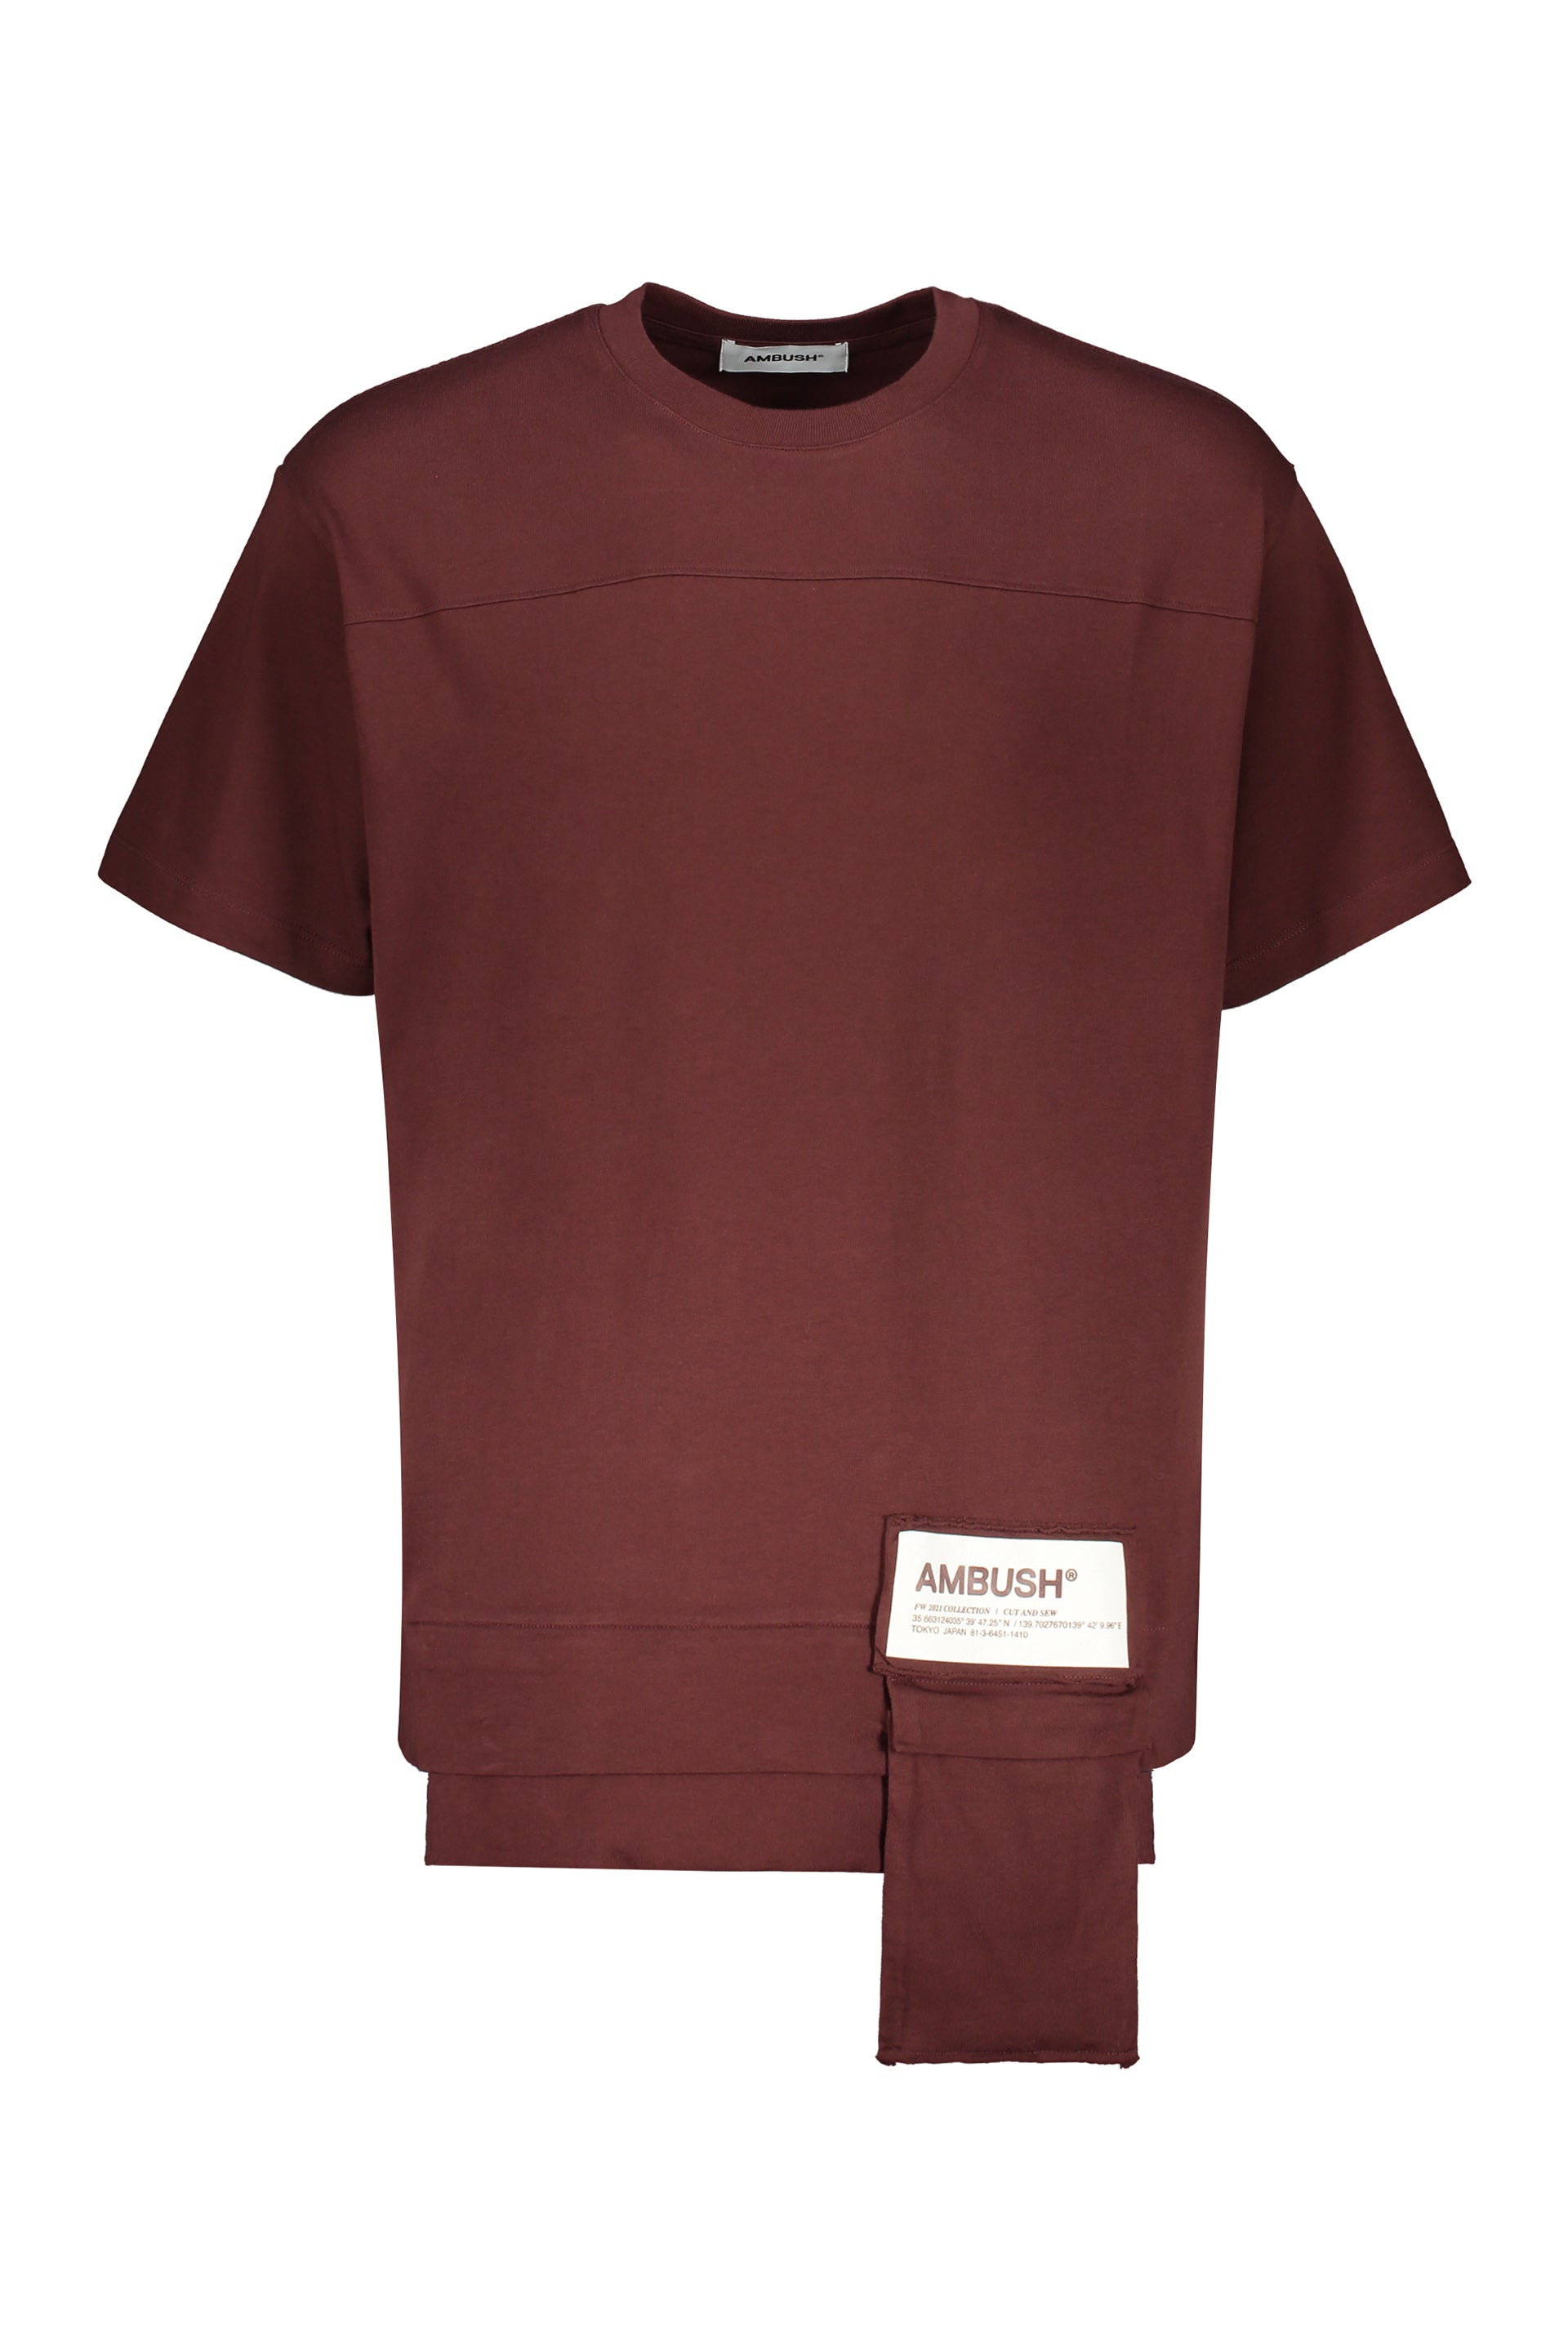 AMBUSH-OUTLET-SALE-Cotton-T-shirt-Shirts-L-ARCHIVE-COLLECTION.jpg